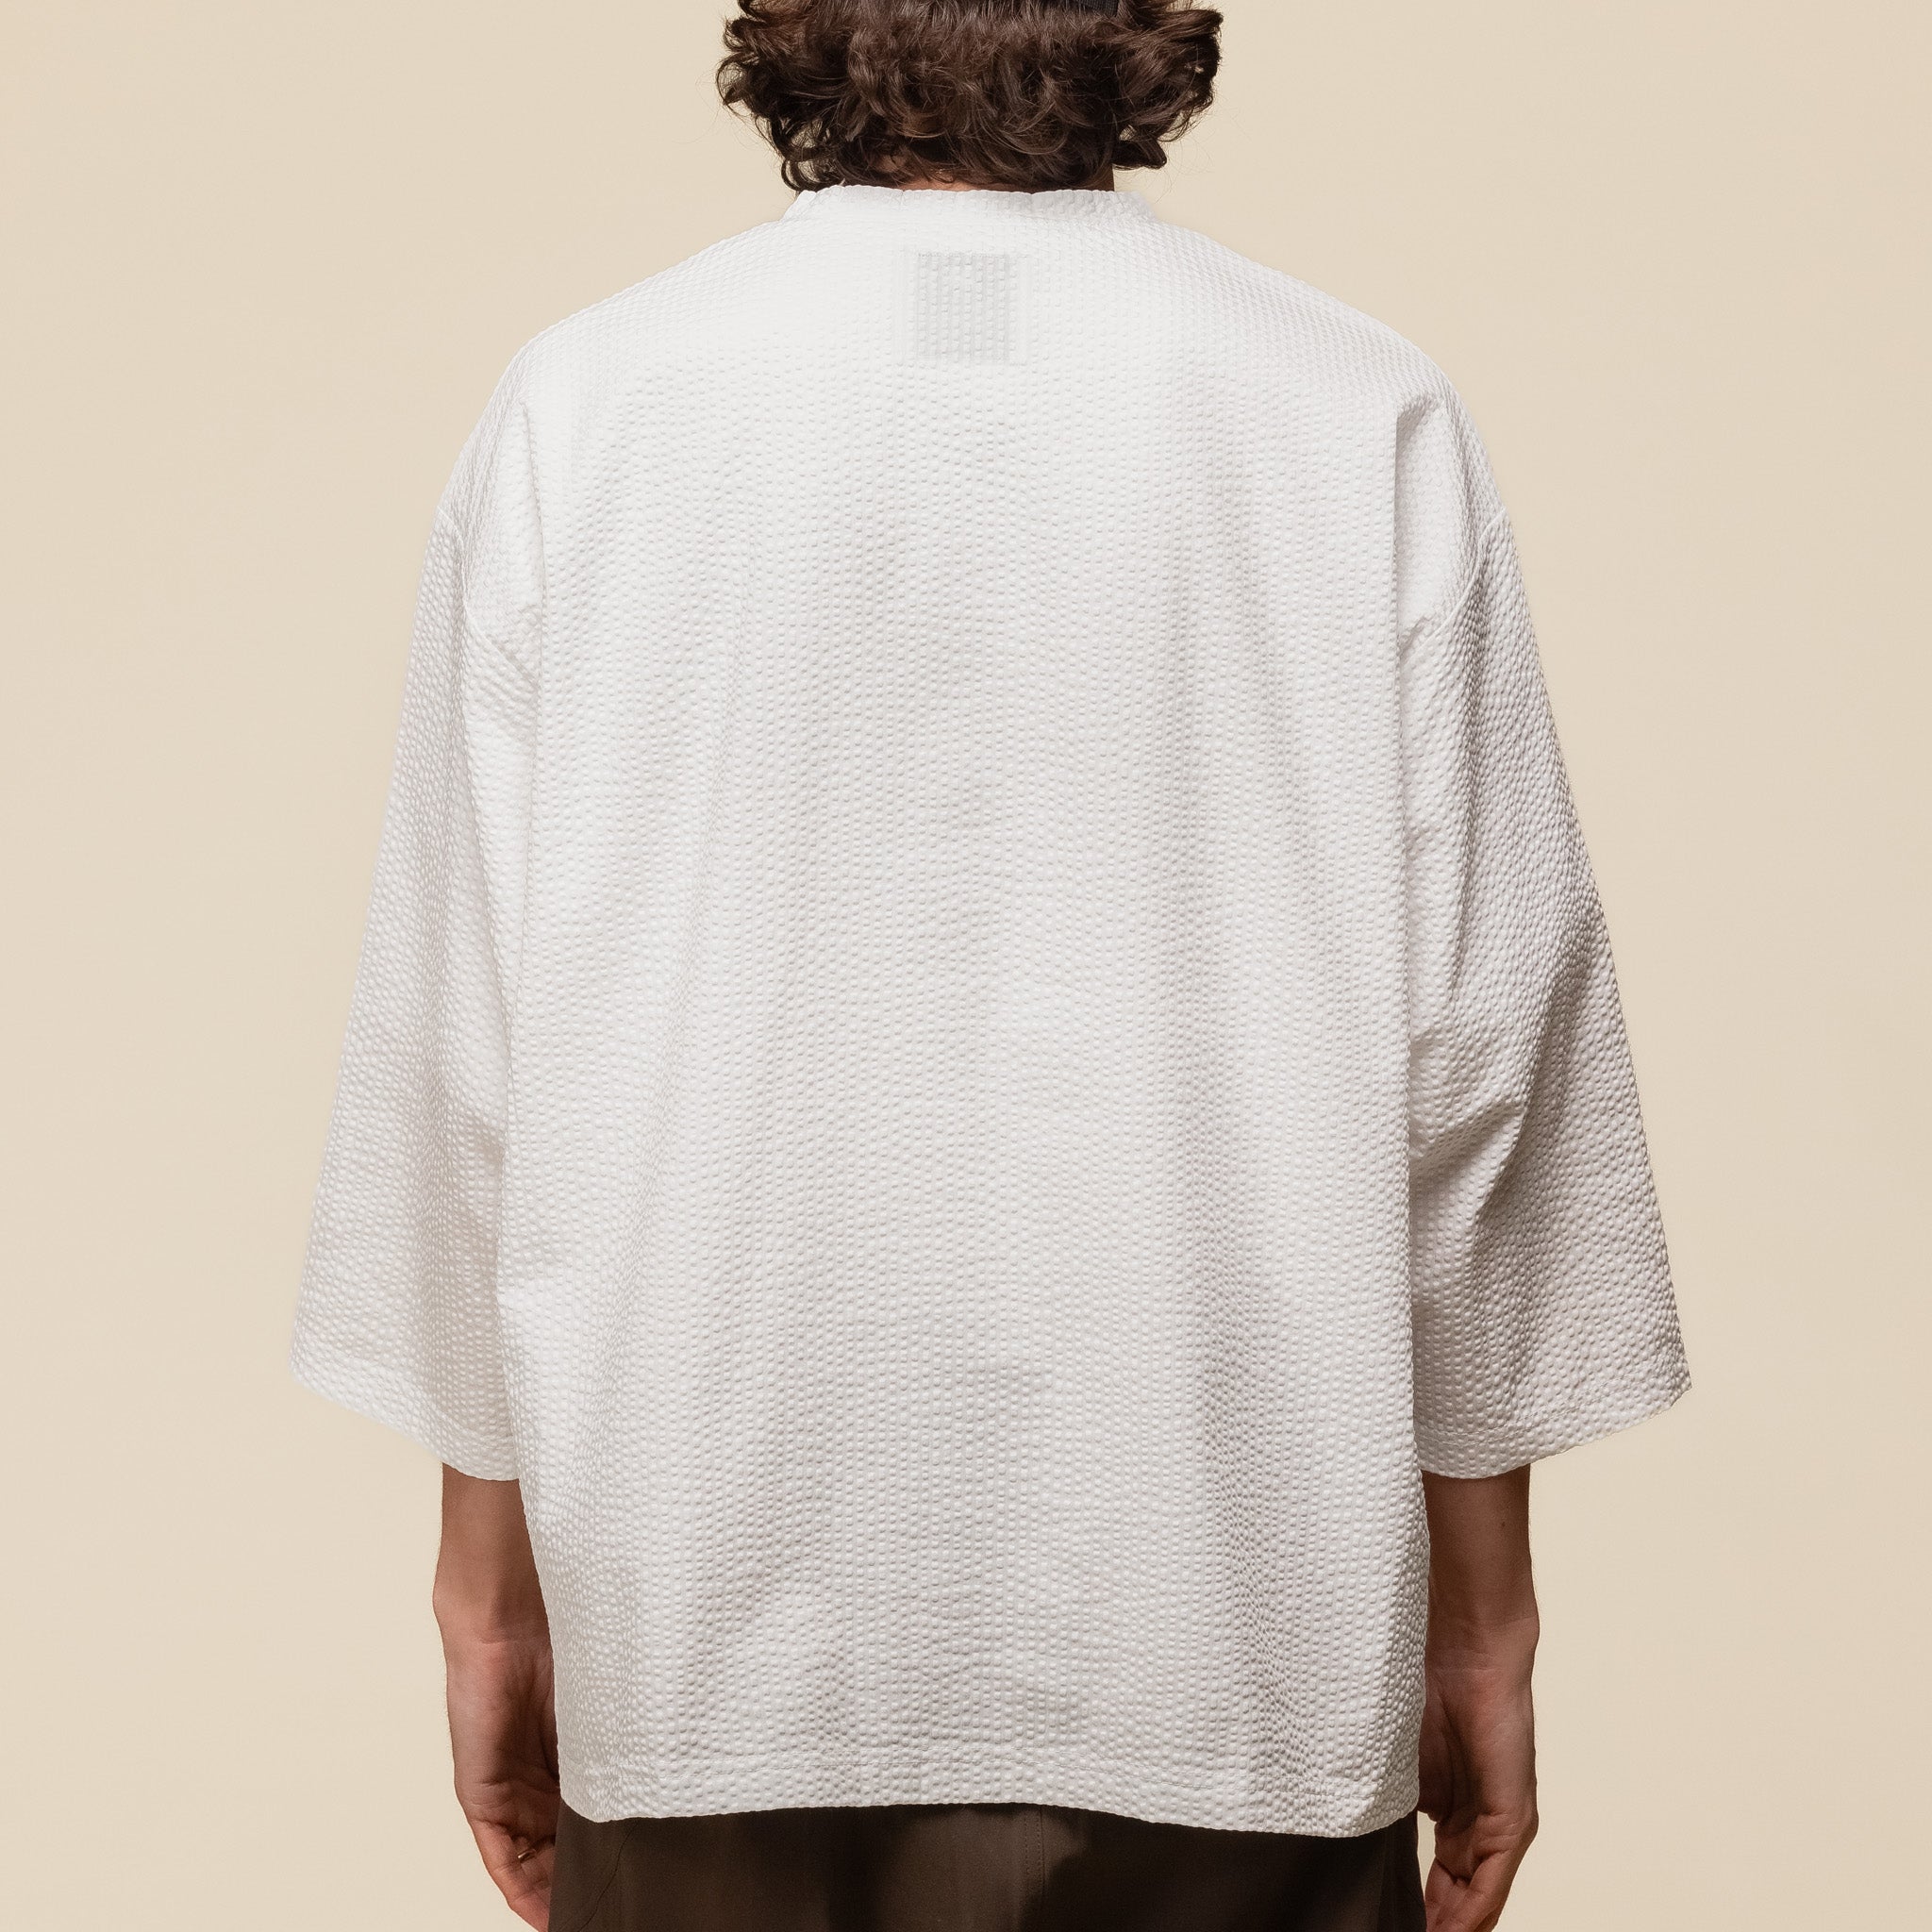 CMF Comfy Outdoor Garment - Samue Shirt - White